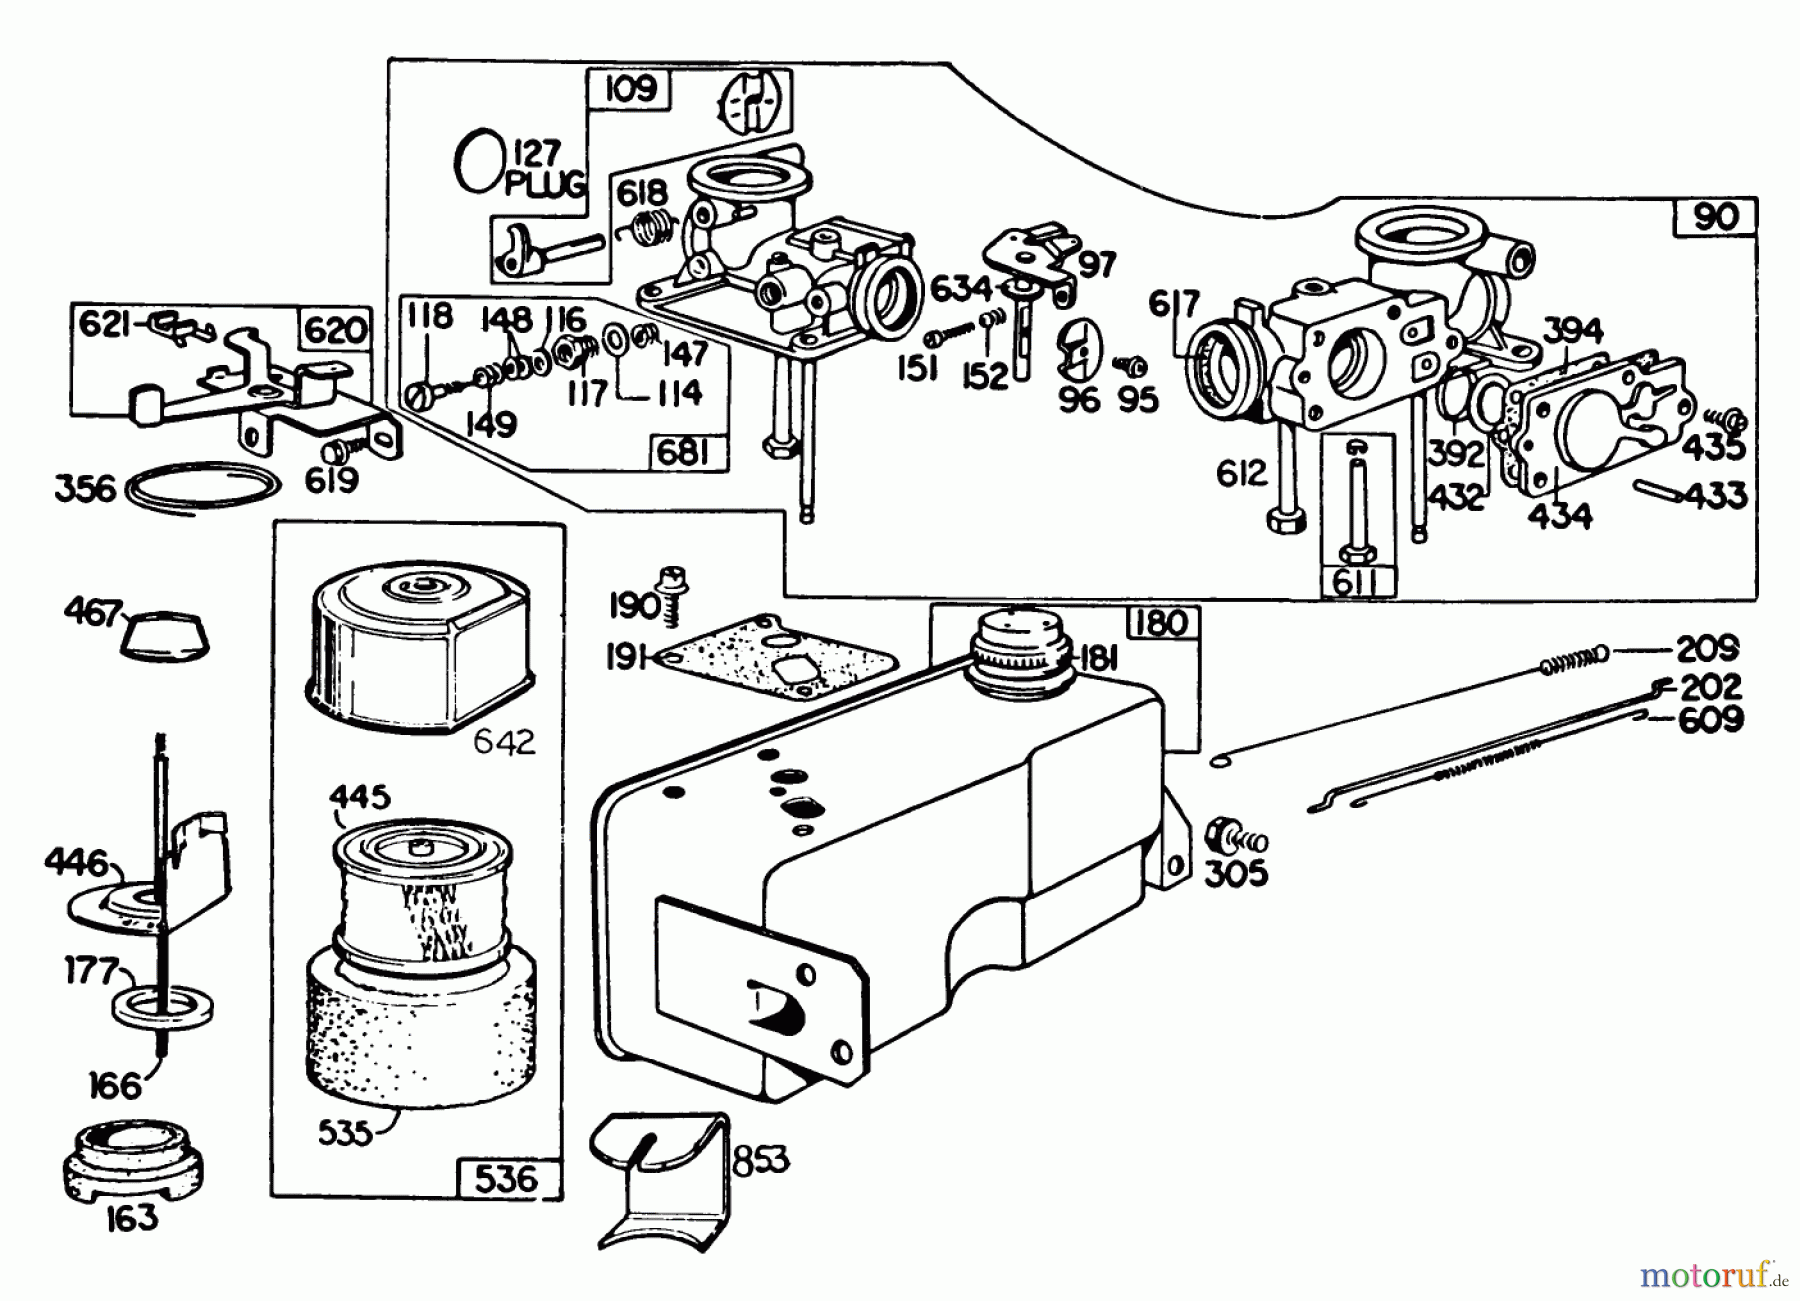  Toro Neu Mowers, Walk-Behind Seite 2 22020 - Toro Lawnmower, 1983 (3000001-3999999) ENGINE BRIGGS & STRATTON MODEL 131922-0163-01 #3